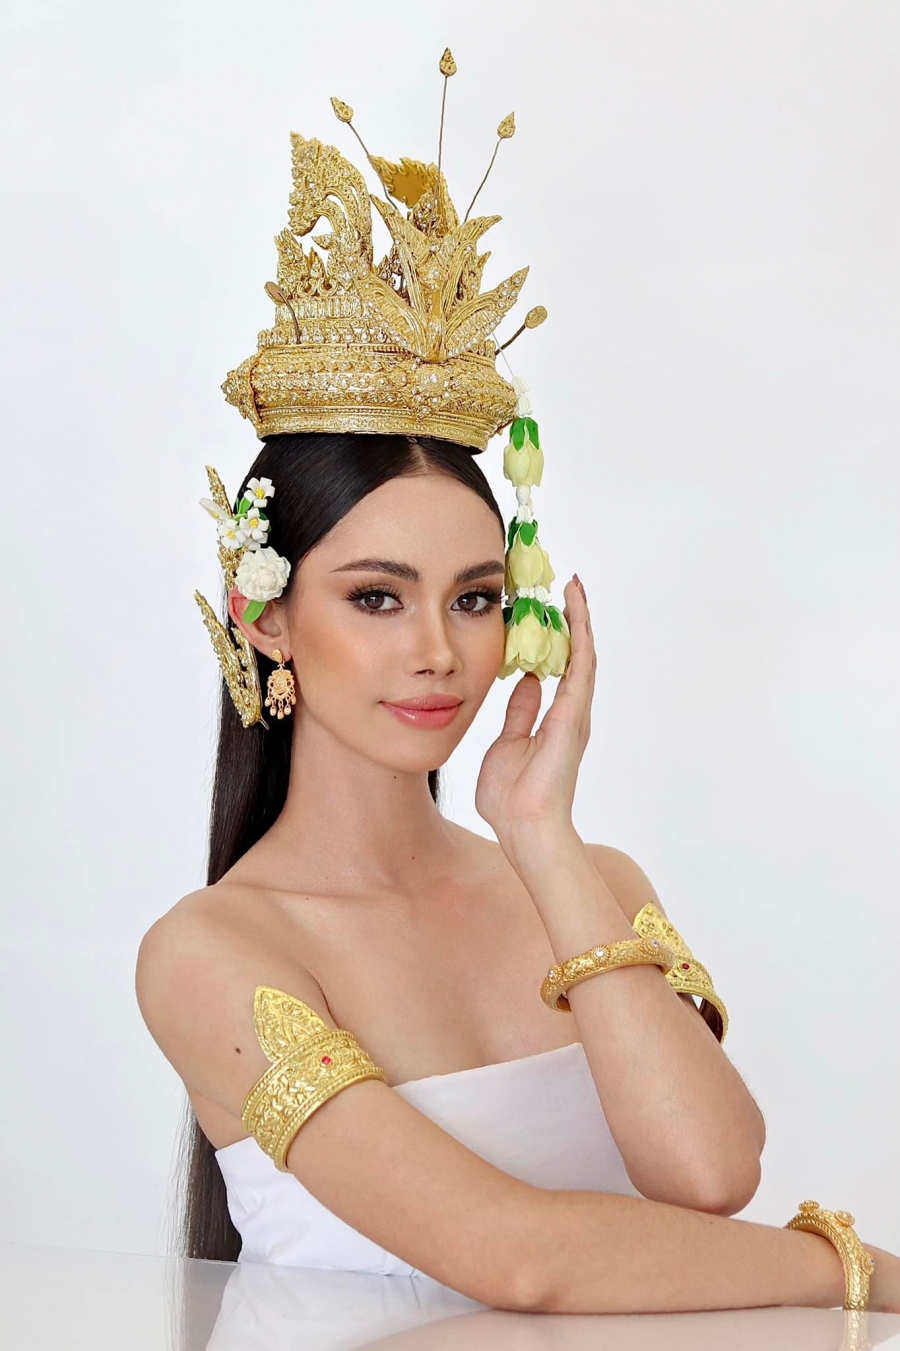 Nhan sắc tân Hoa hậu Hoàn vũ đẹp nhất lịch sử sắc đẹp Campuchia - Ảnh 7